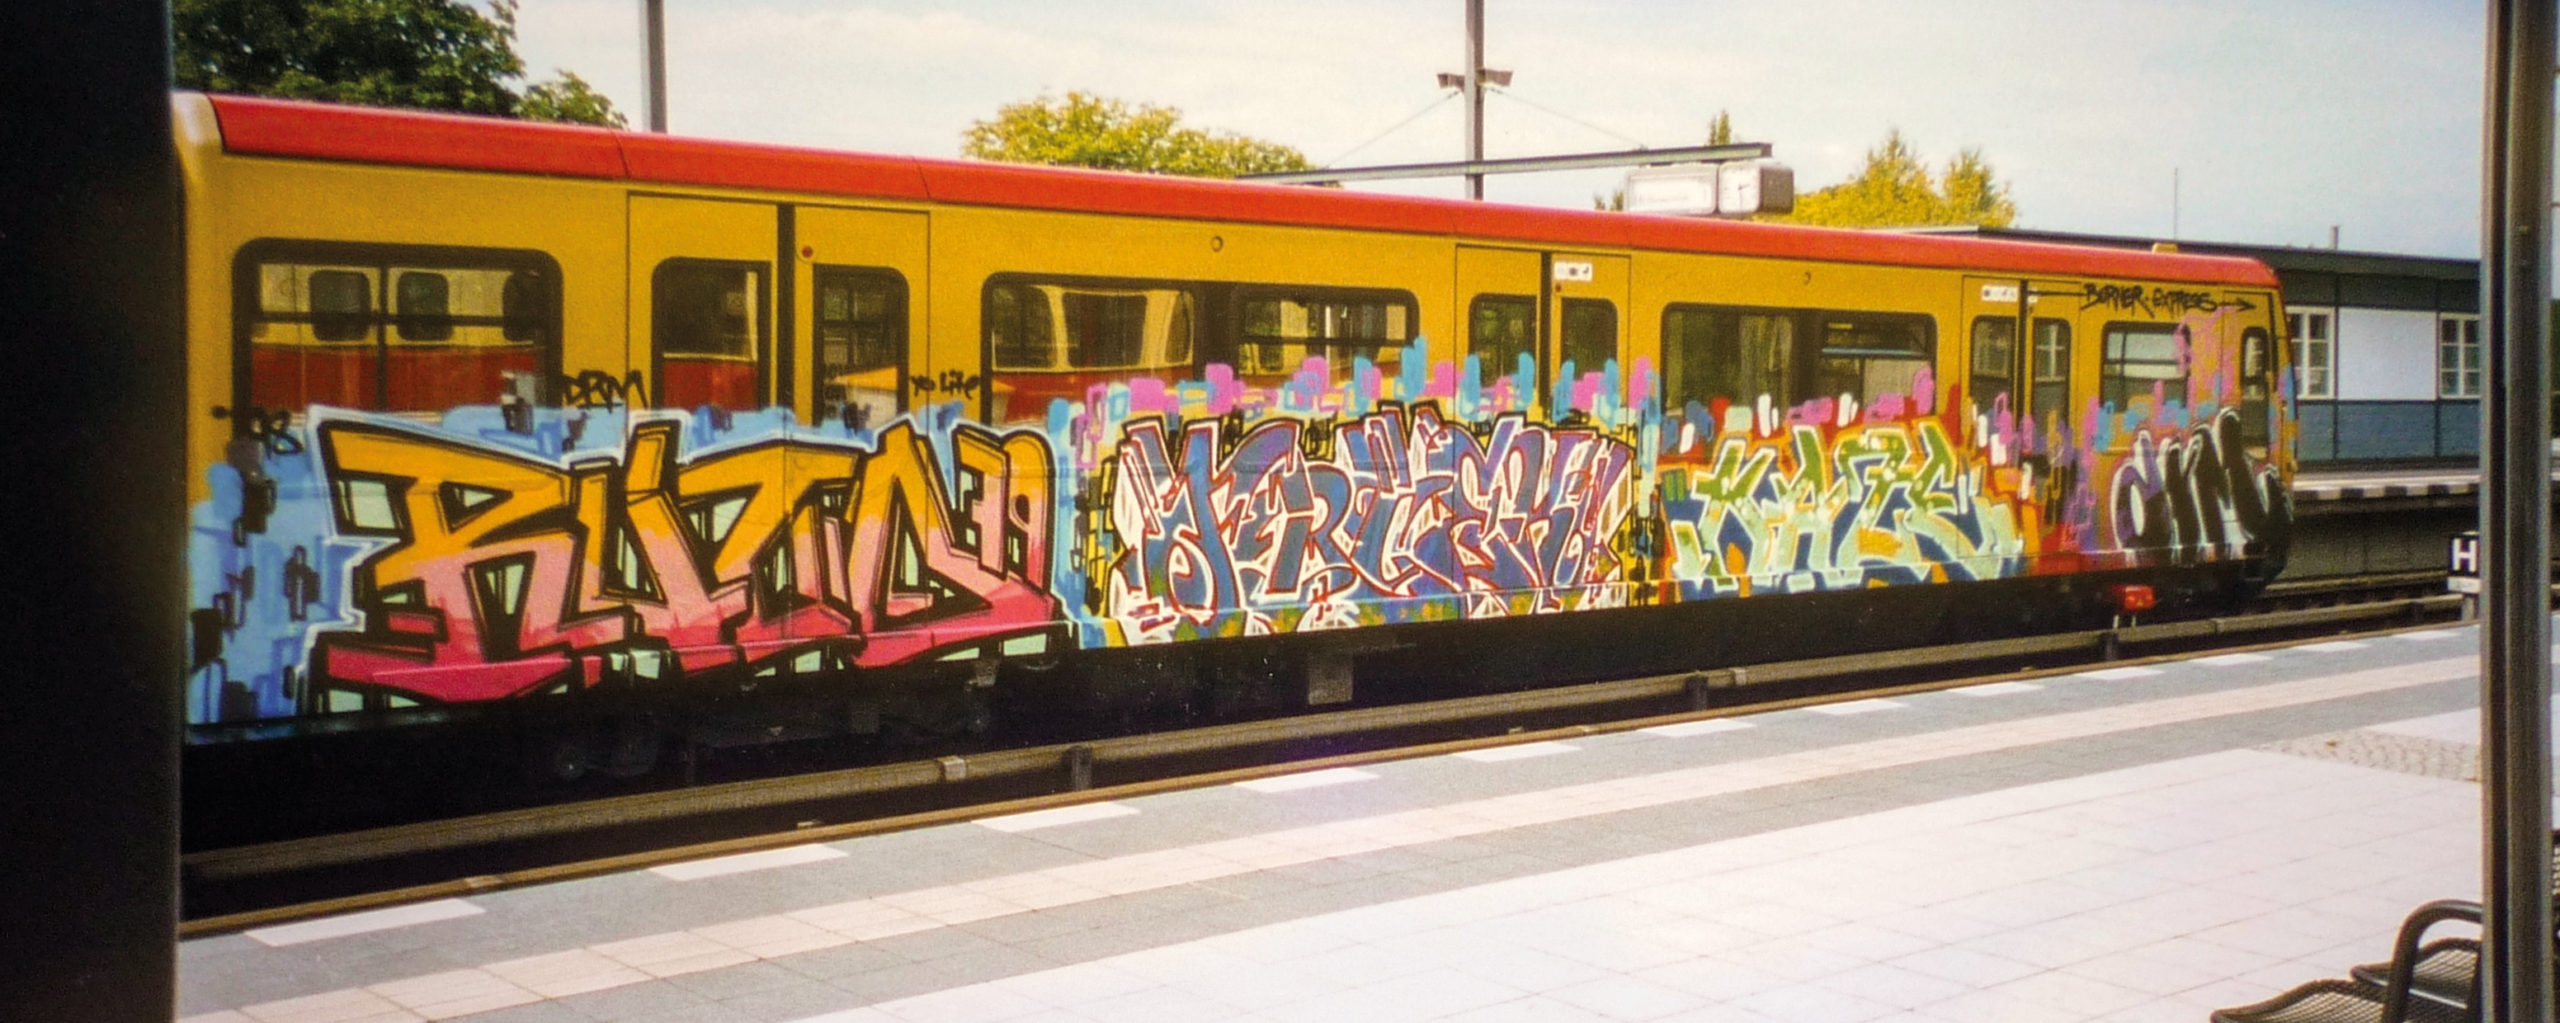 Eine mit Graffiti besprühte S-Bahn in Berlin.